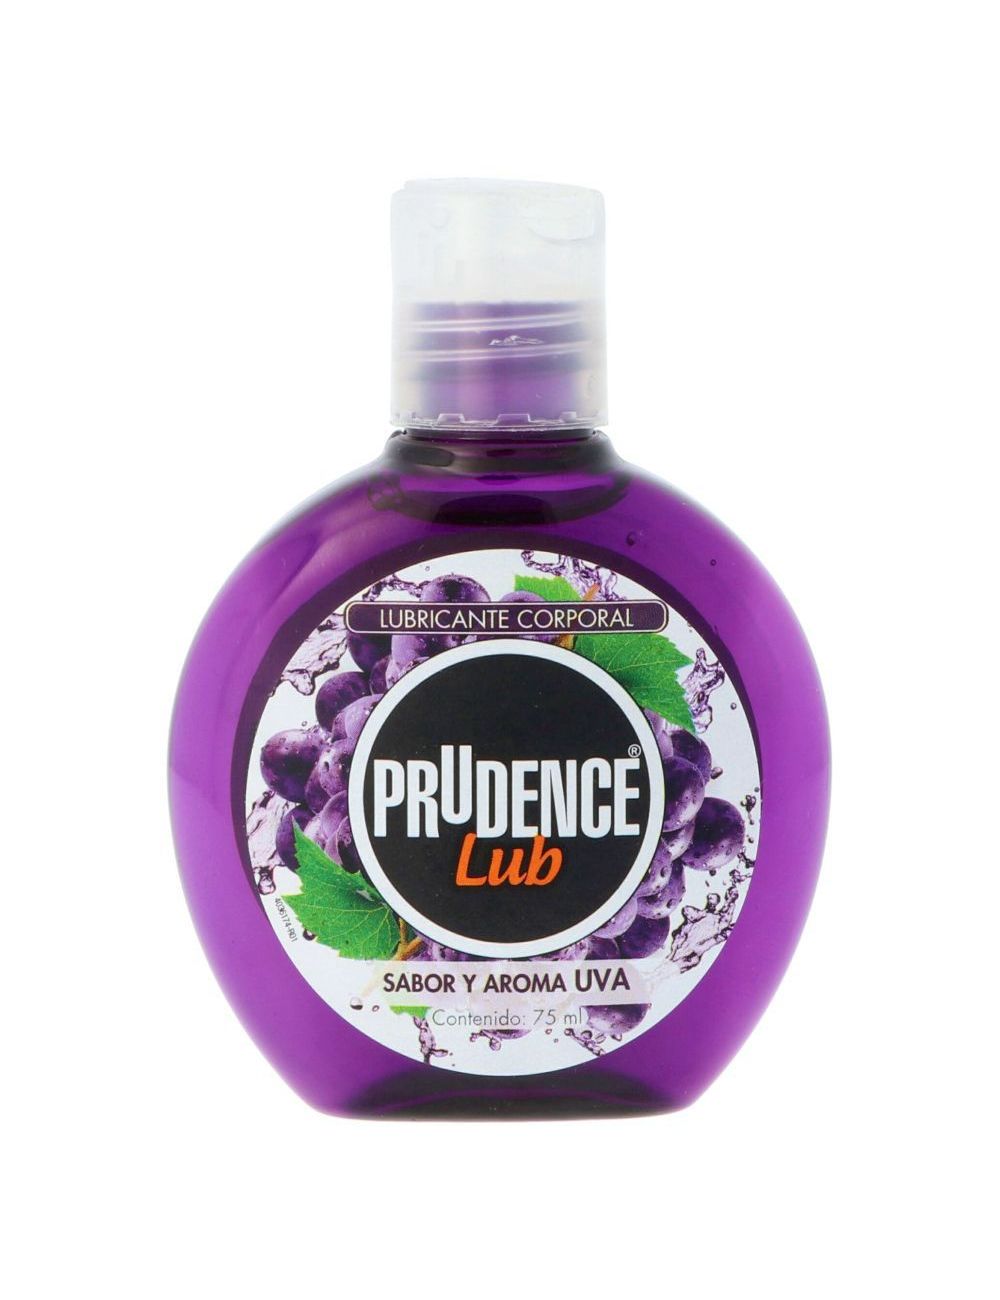 Precio Lubricante Prudence Lub 75 mL sabor uva | Farmalisto MX